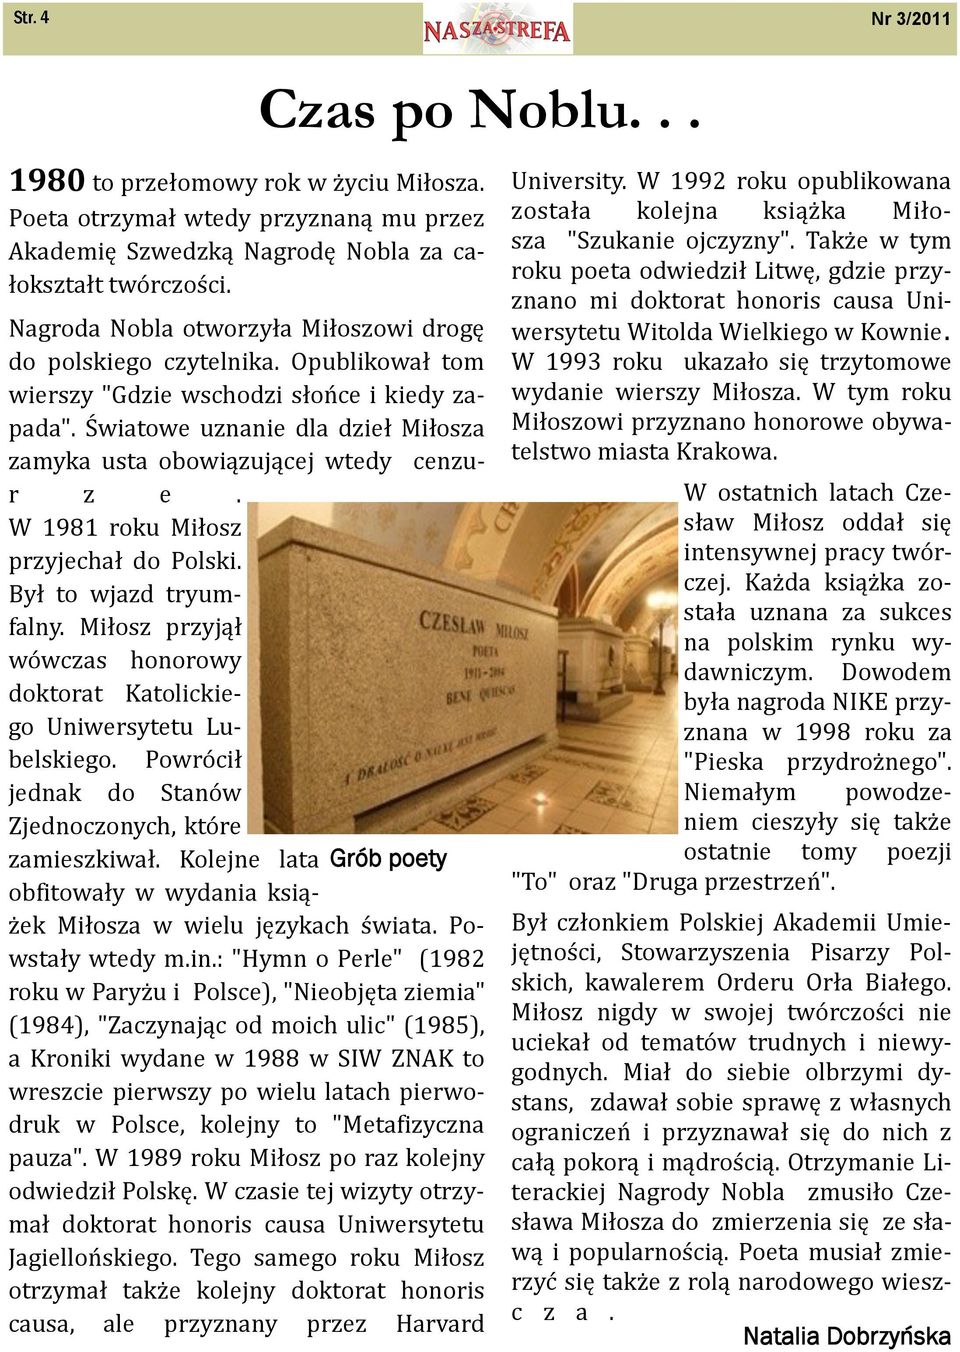 Światowe uznanie dla dzieł Miłosza zamyka usta obowiązującej wtedy cenzur z e. W 1981 roku Miłosz przyjechał do Polski. Był to wjazd tryumfalny.